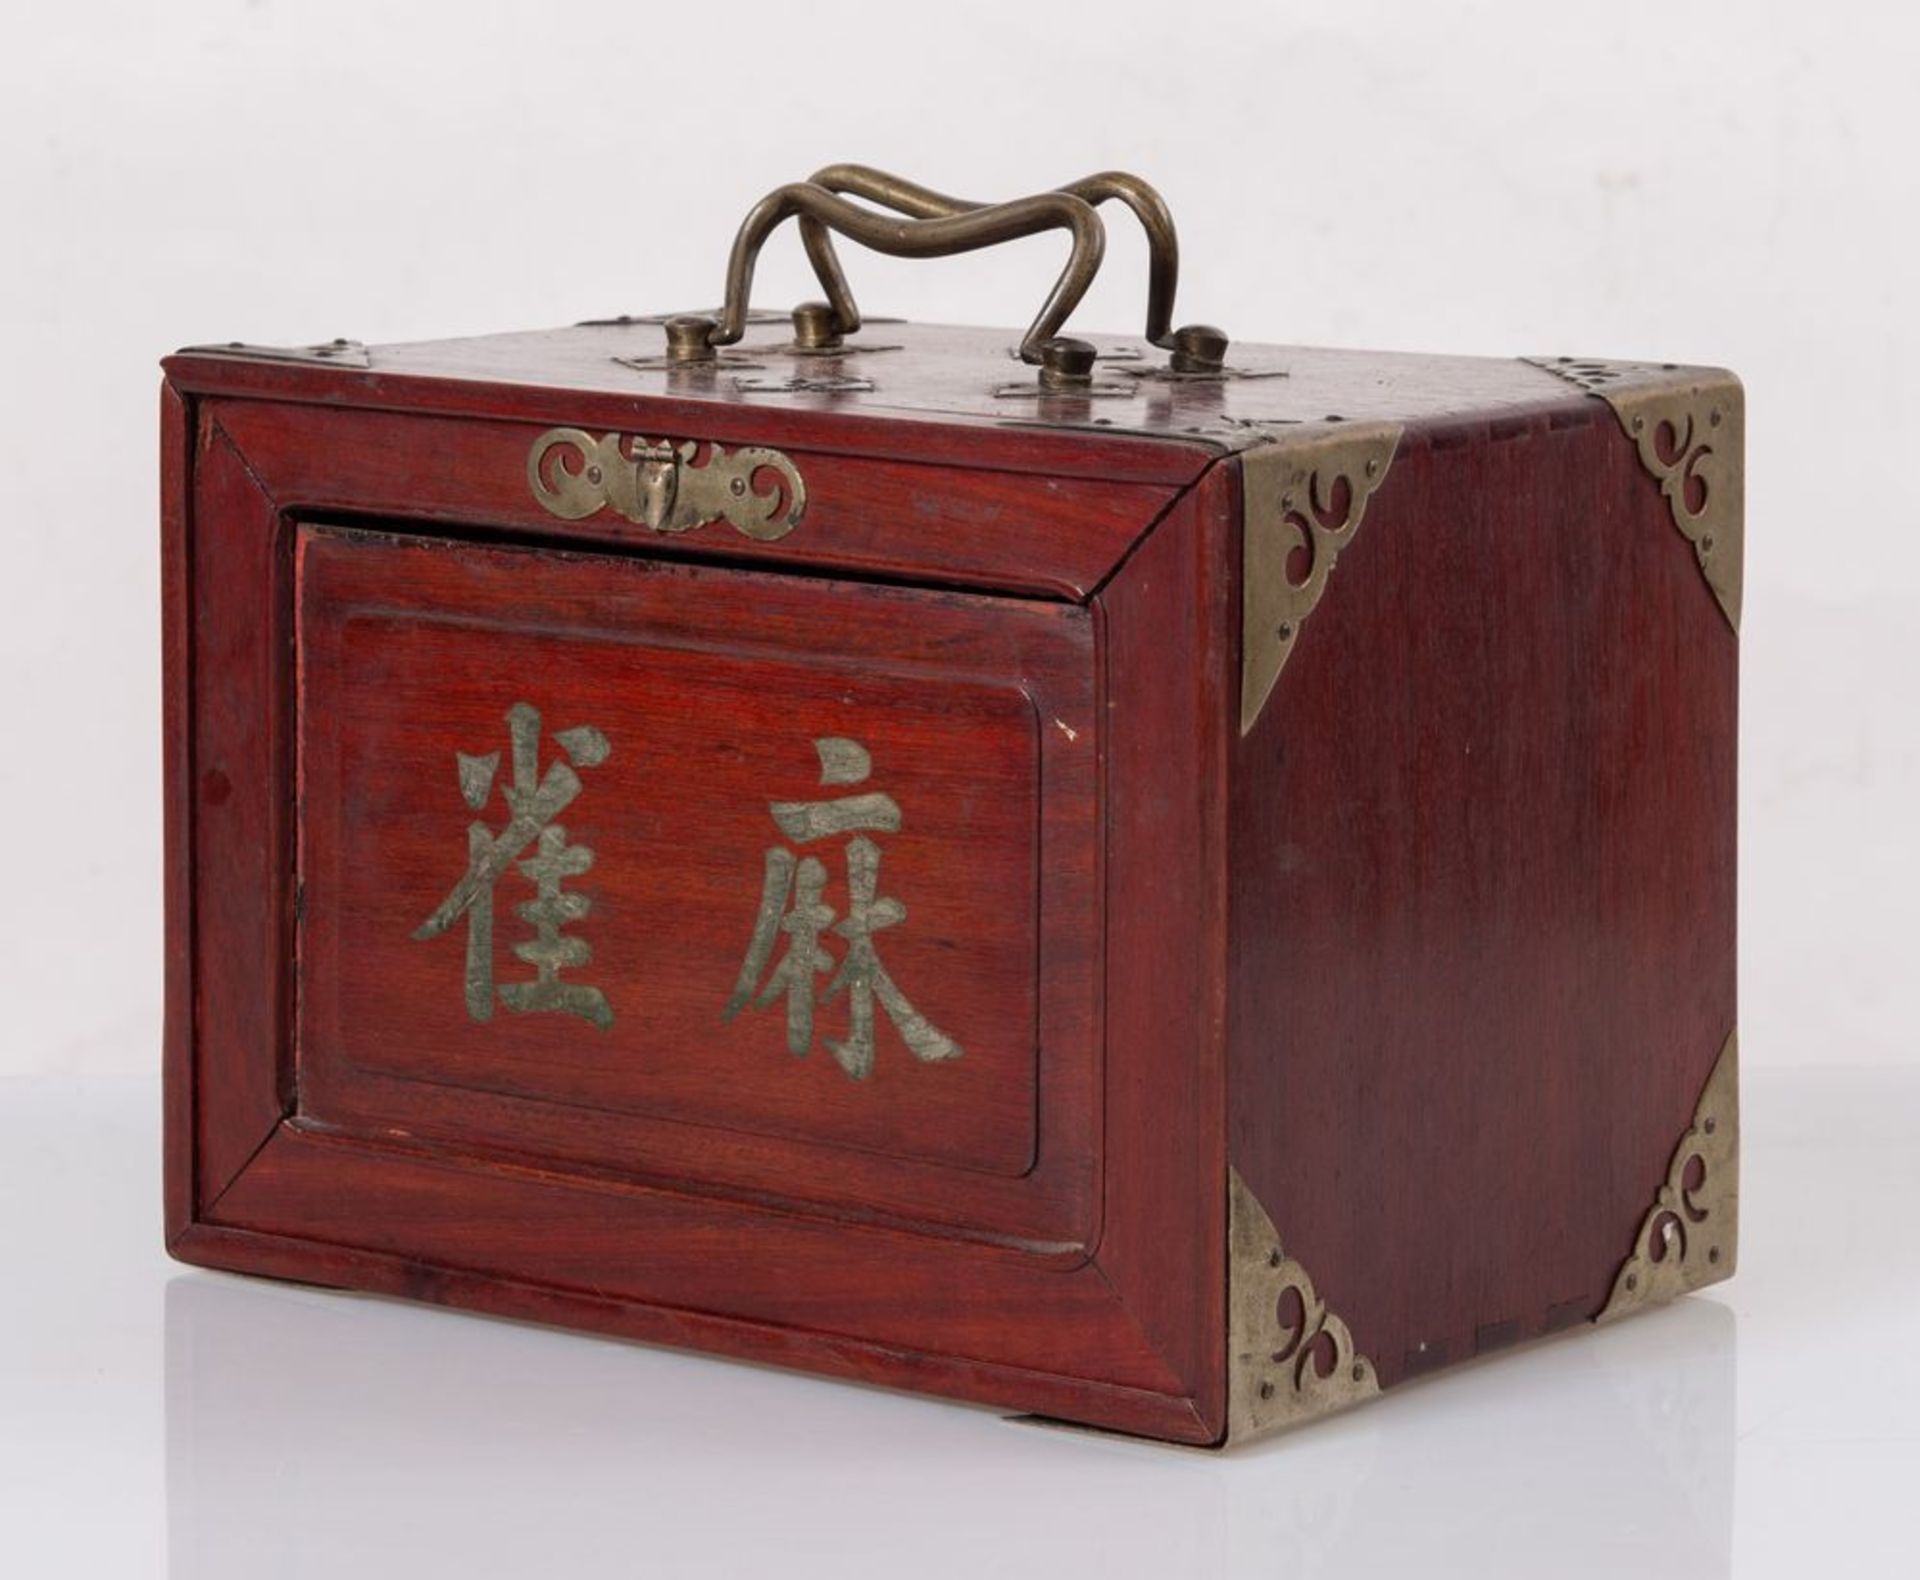 Scatola contenente gioco del MAH JONG in legno con applicazioni in bronzo. Pedine in legno di bamboo - Bild 5 aus 5